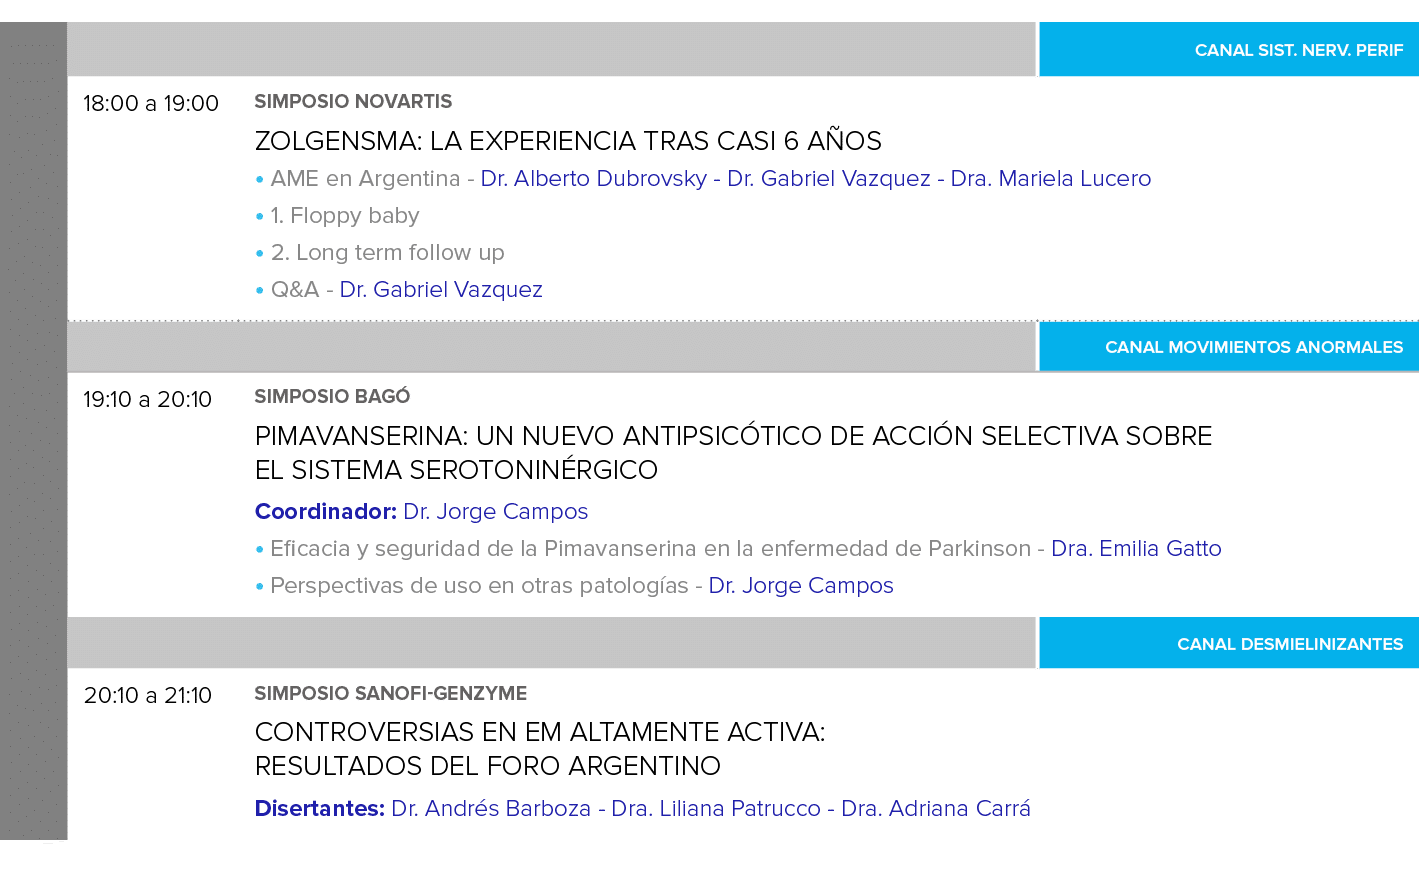 ,,,Canal Sist  Nerv  Perif,,18:00 a 19:00 ,SIMPOSIO NOVARTIS Zolgensma: La experiencia tras casi 6 años AME en Argent   